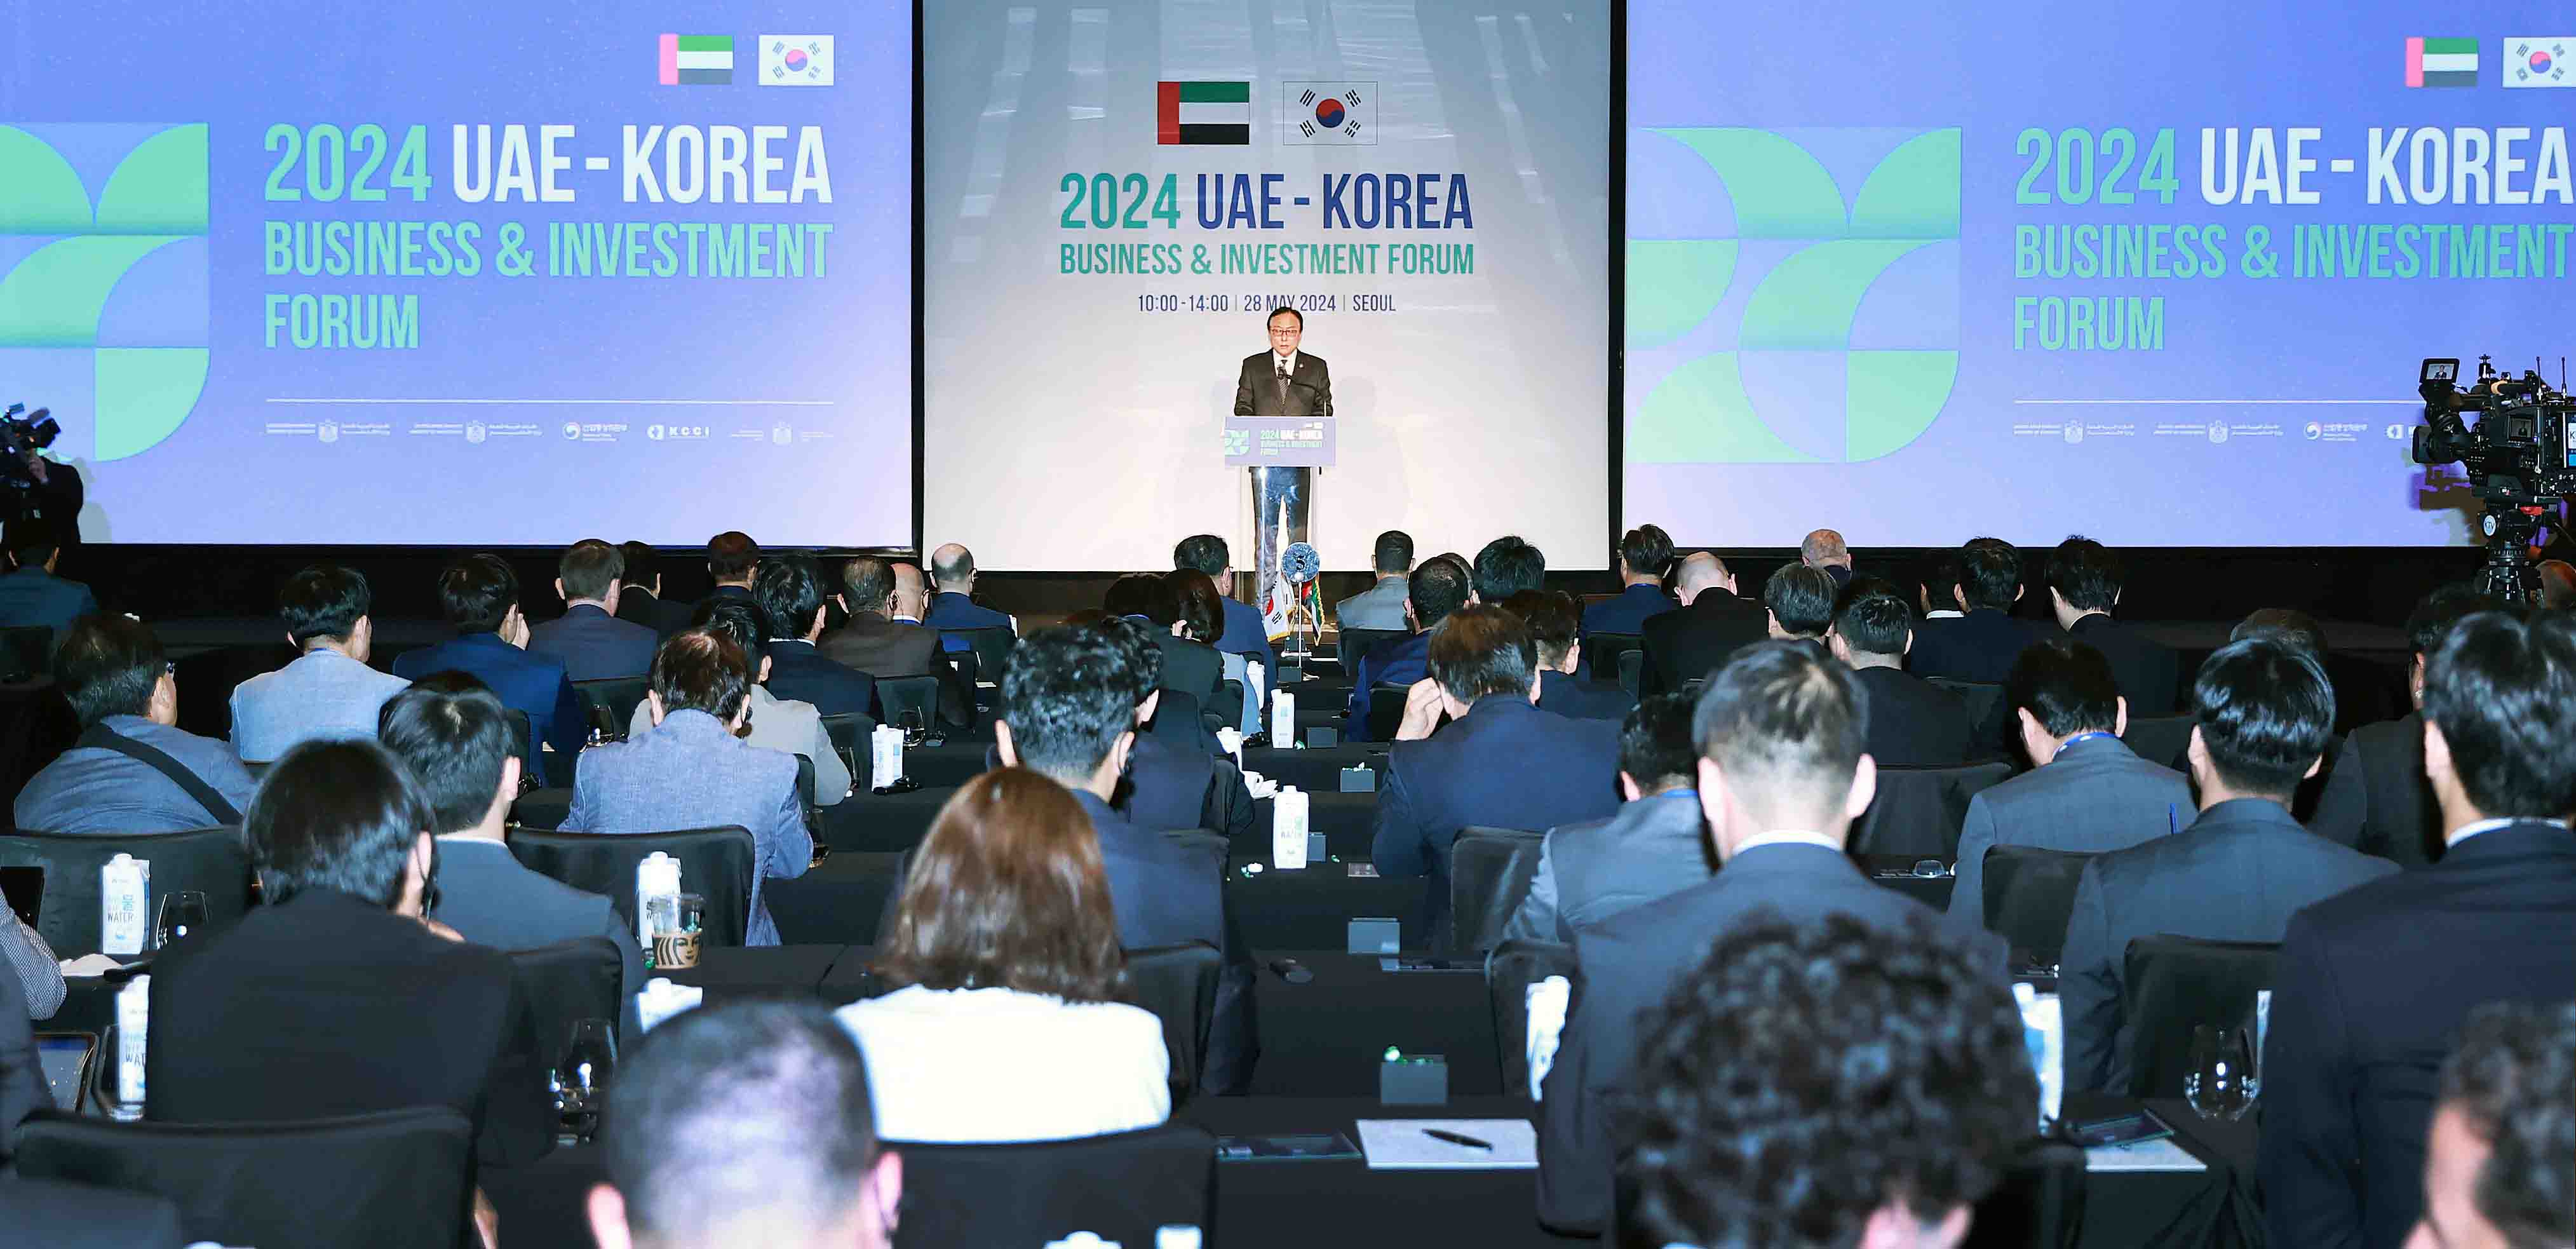 Korea-UAE Business & Investment Forum